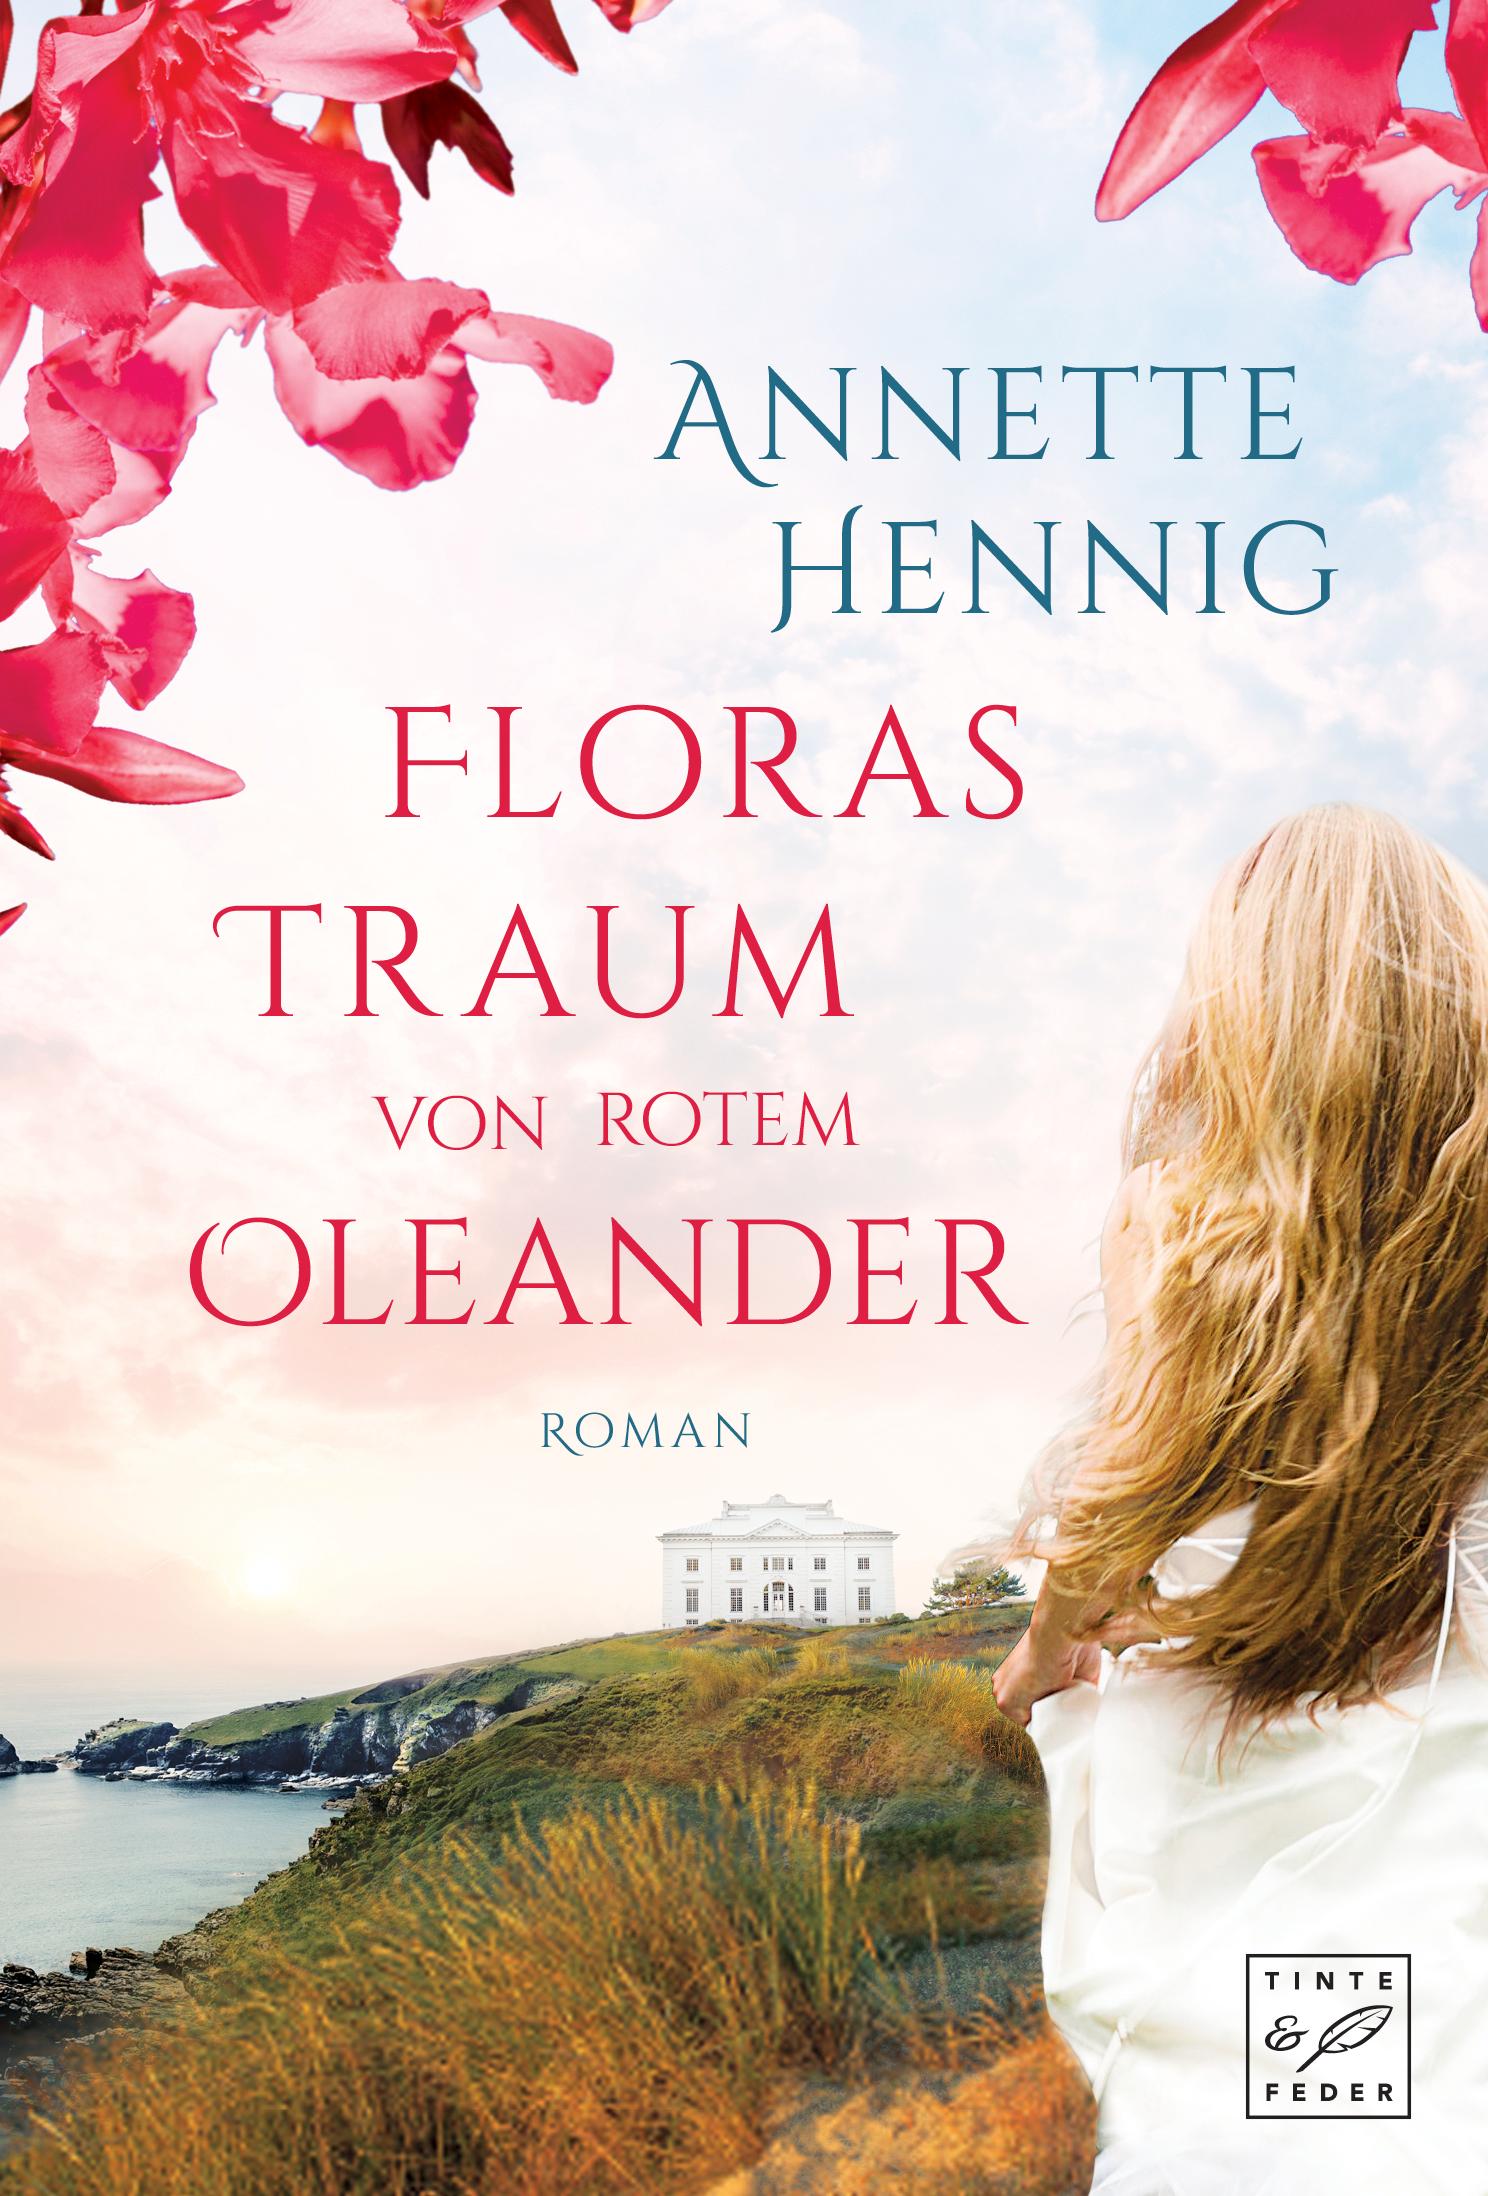 Annette Hennig – Floras Traum von rotem Oleander